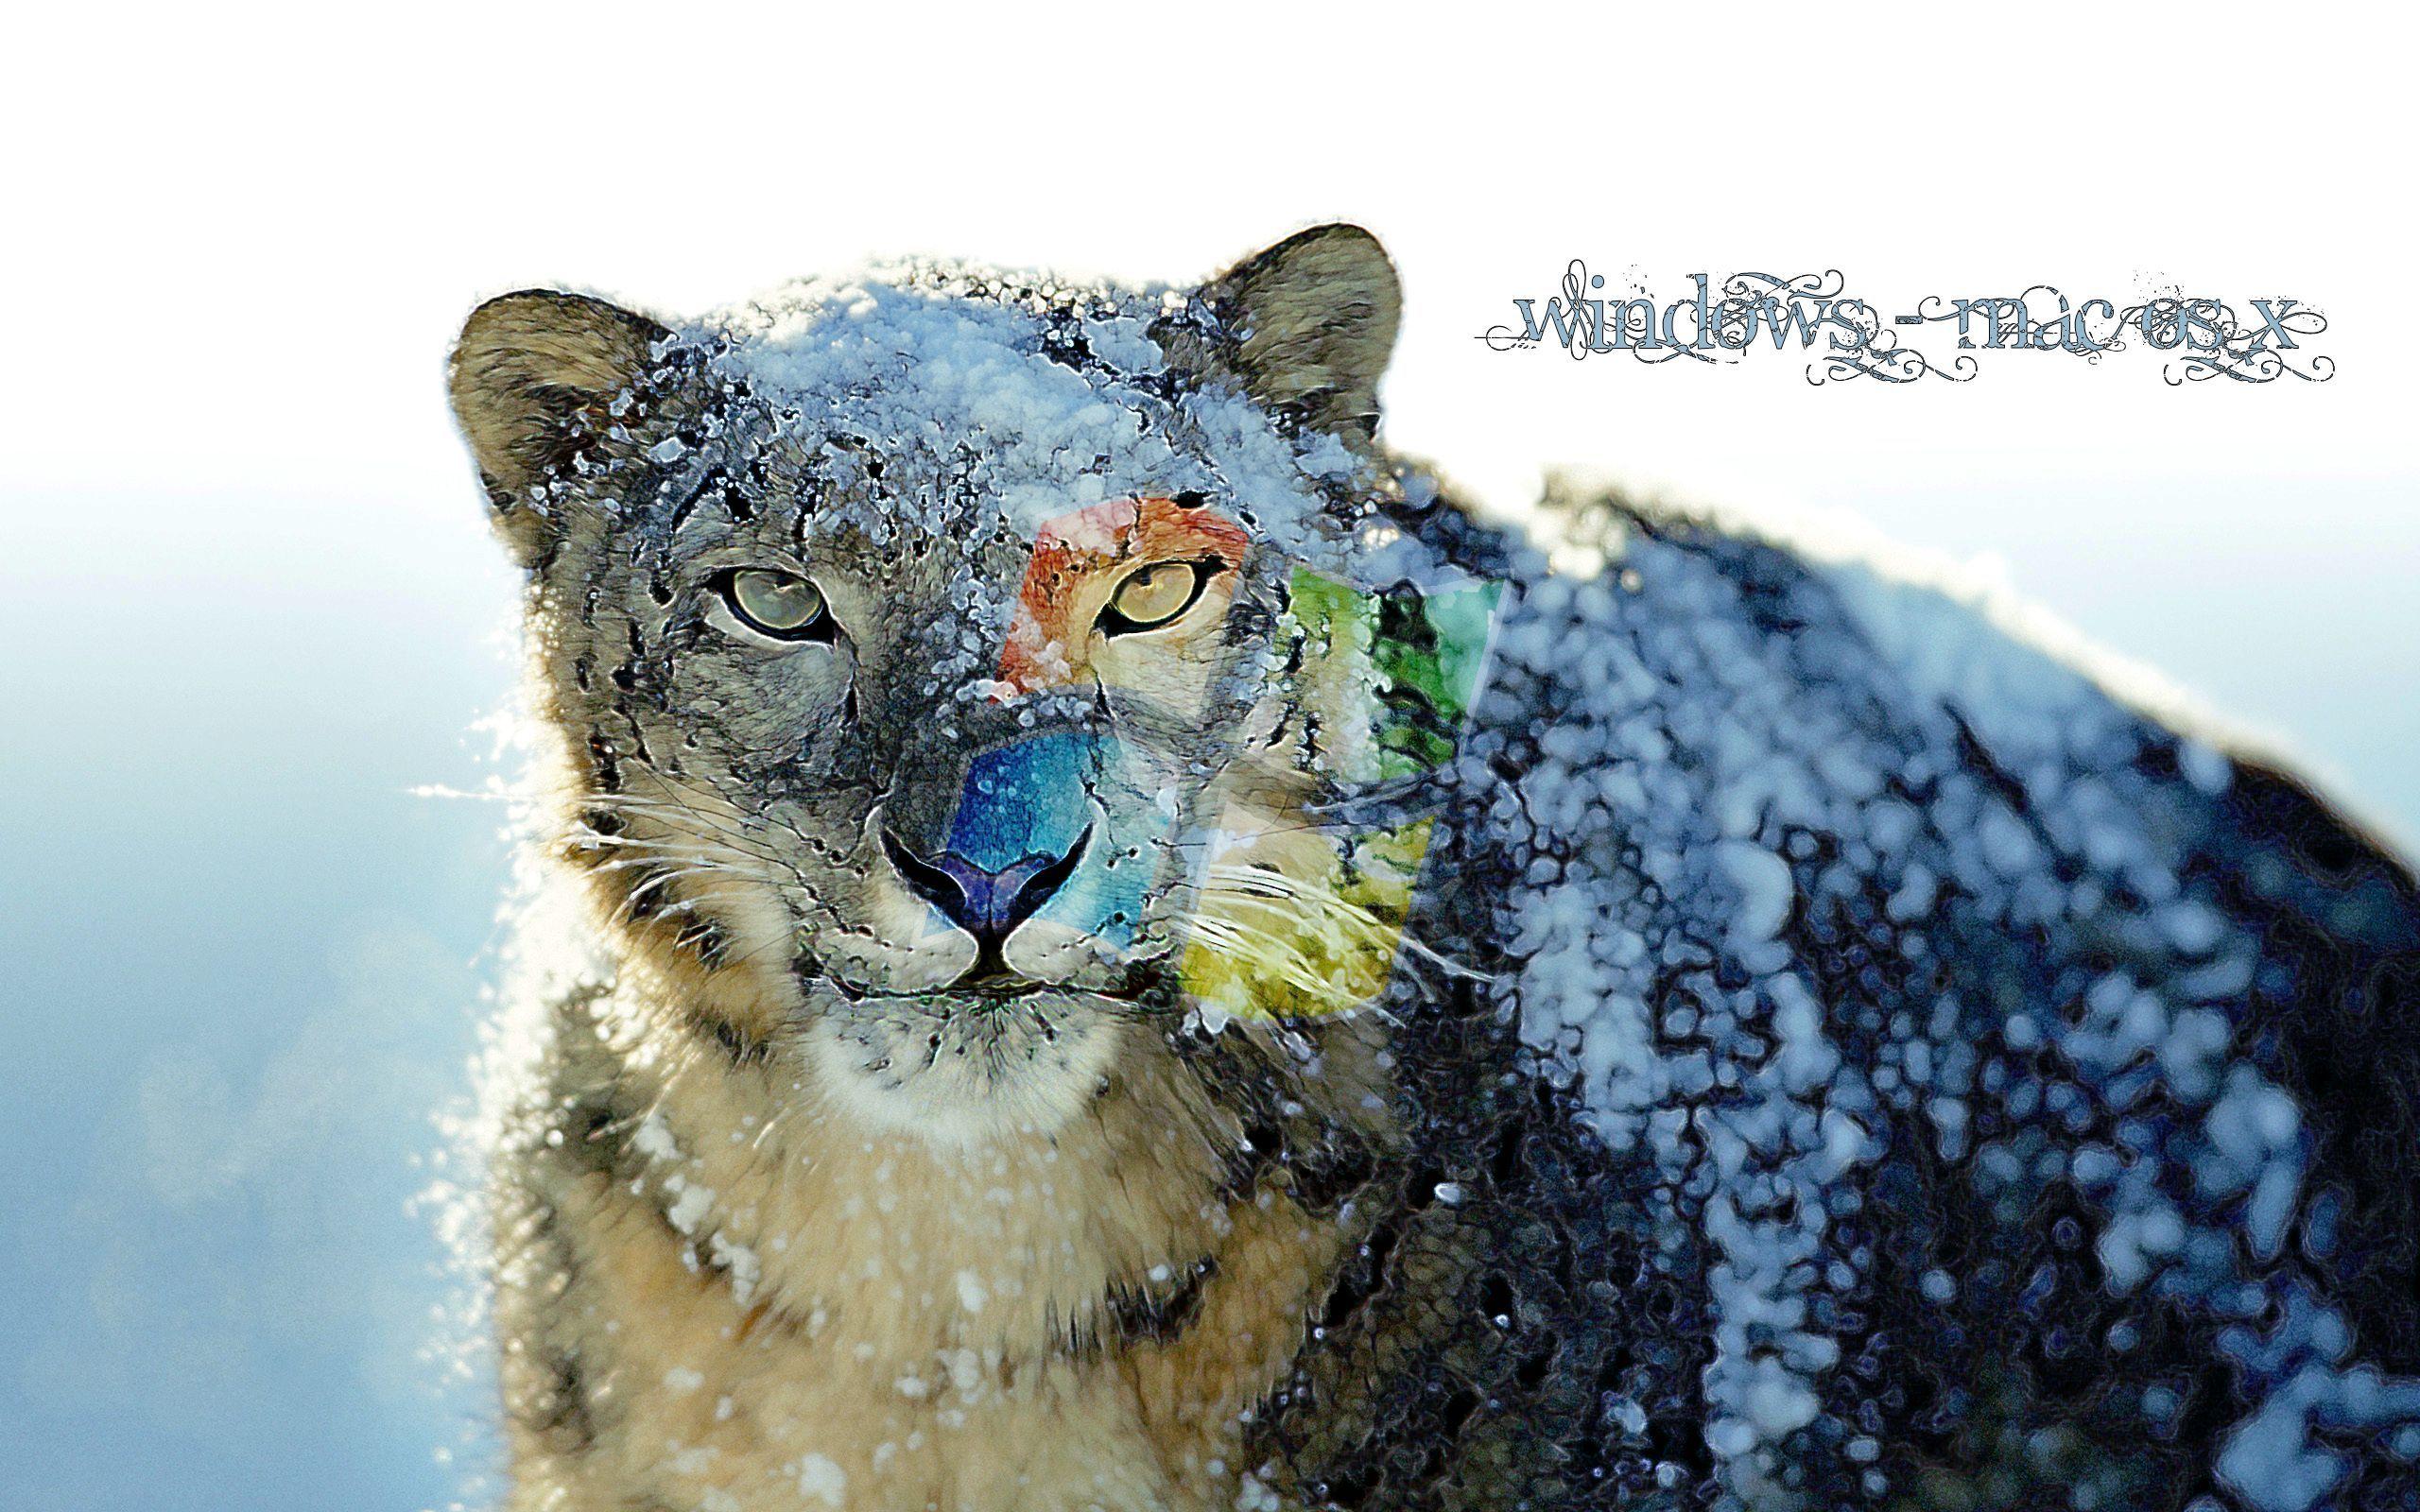 Snow leopard 1080P, 2K, 4K, 5K HD wallpapers free download | Wallpaper Flare